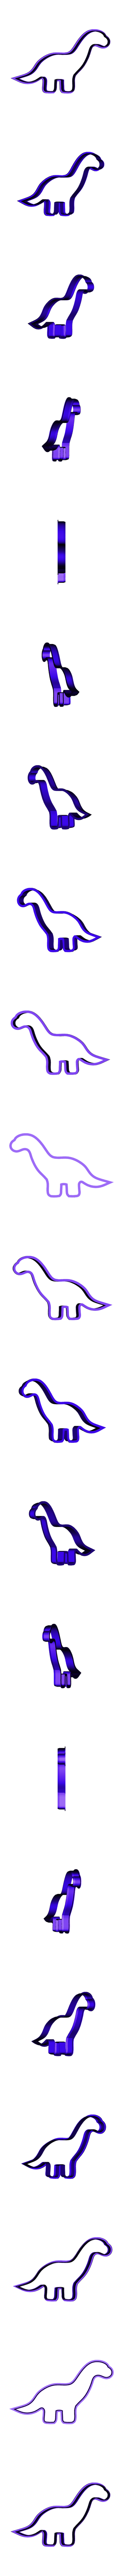 dinosaurio_4_-_1.3.stl Descargar archivo STL DINOSAURIO CUELLO LARGO • Modelo para imprimir en 3D, LemaT